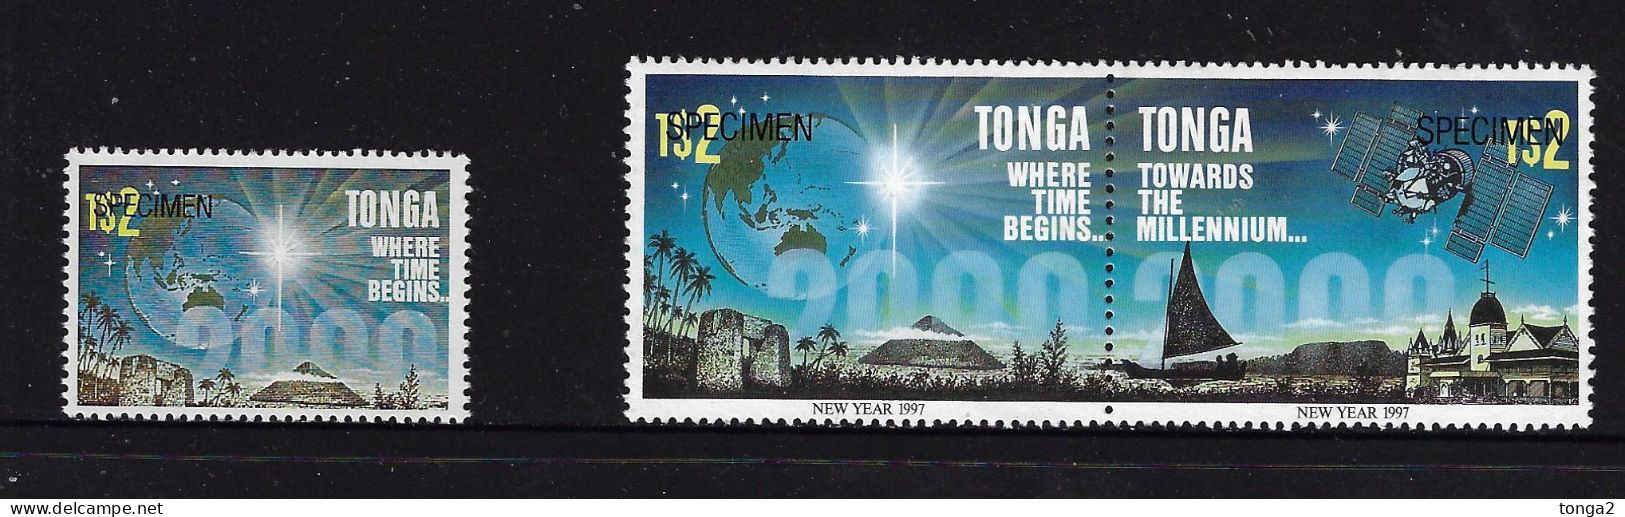 Tonga 1996 ESSAY $2.00 Space - Time - Important Read Description For More Details - Oceanië